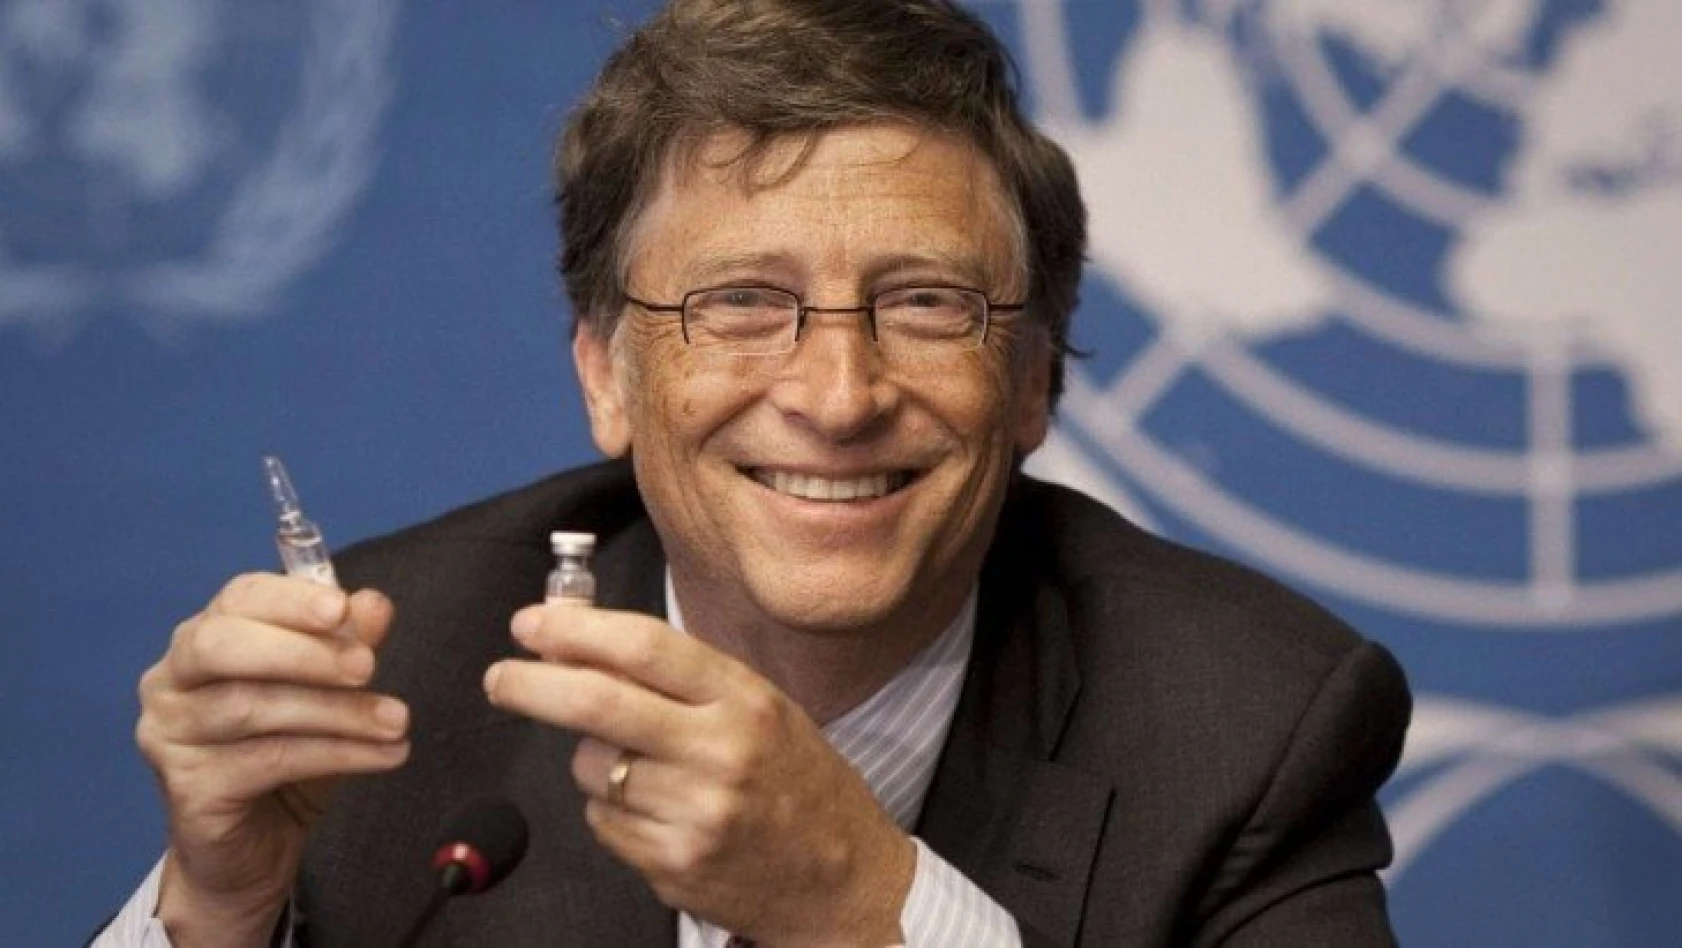 Microsoft kurucusu Bill Gates, koronavirüs aşısı için yeni tarih verdi